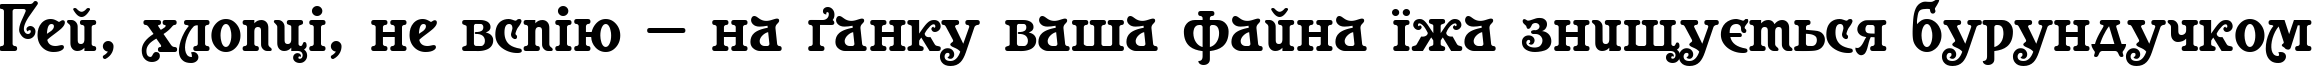 Пример написания шрифтом Casanova текста на украинском